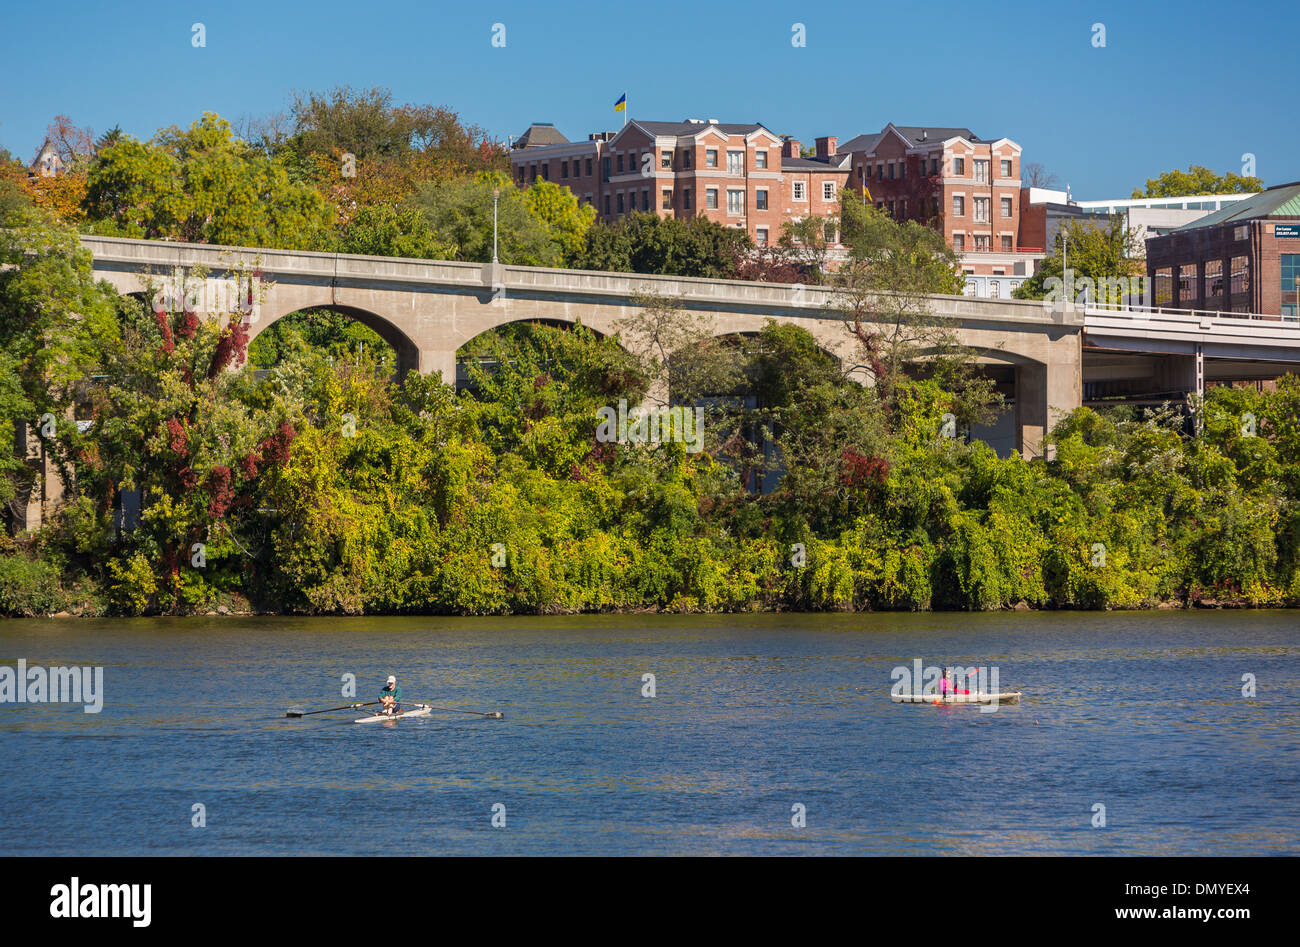 WASHINGTON, DC, USA - Menschen in Kajaks am Potomac River, in der Nähe von Georgetown. Whitehurst erhöhte Autobahn hinten. Stockfoto